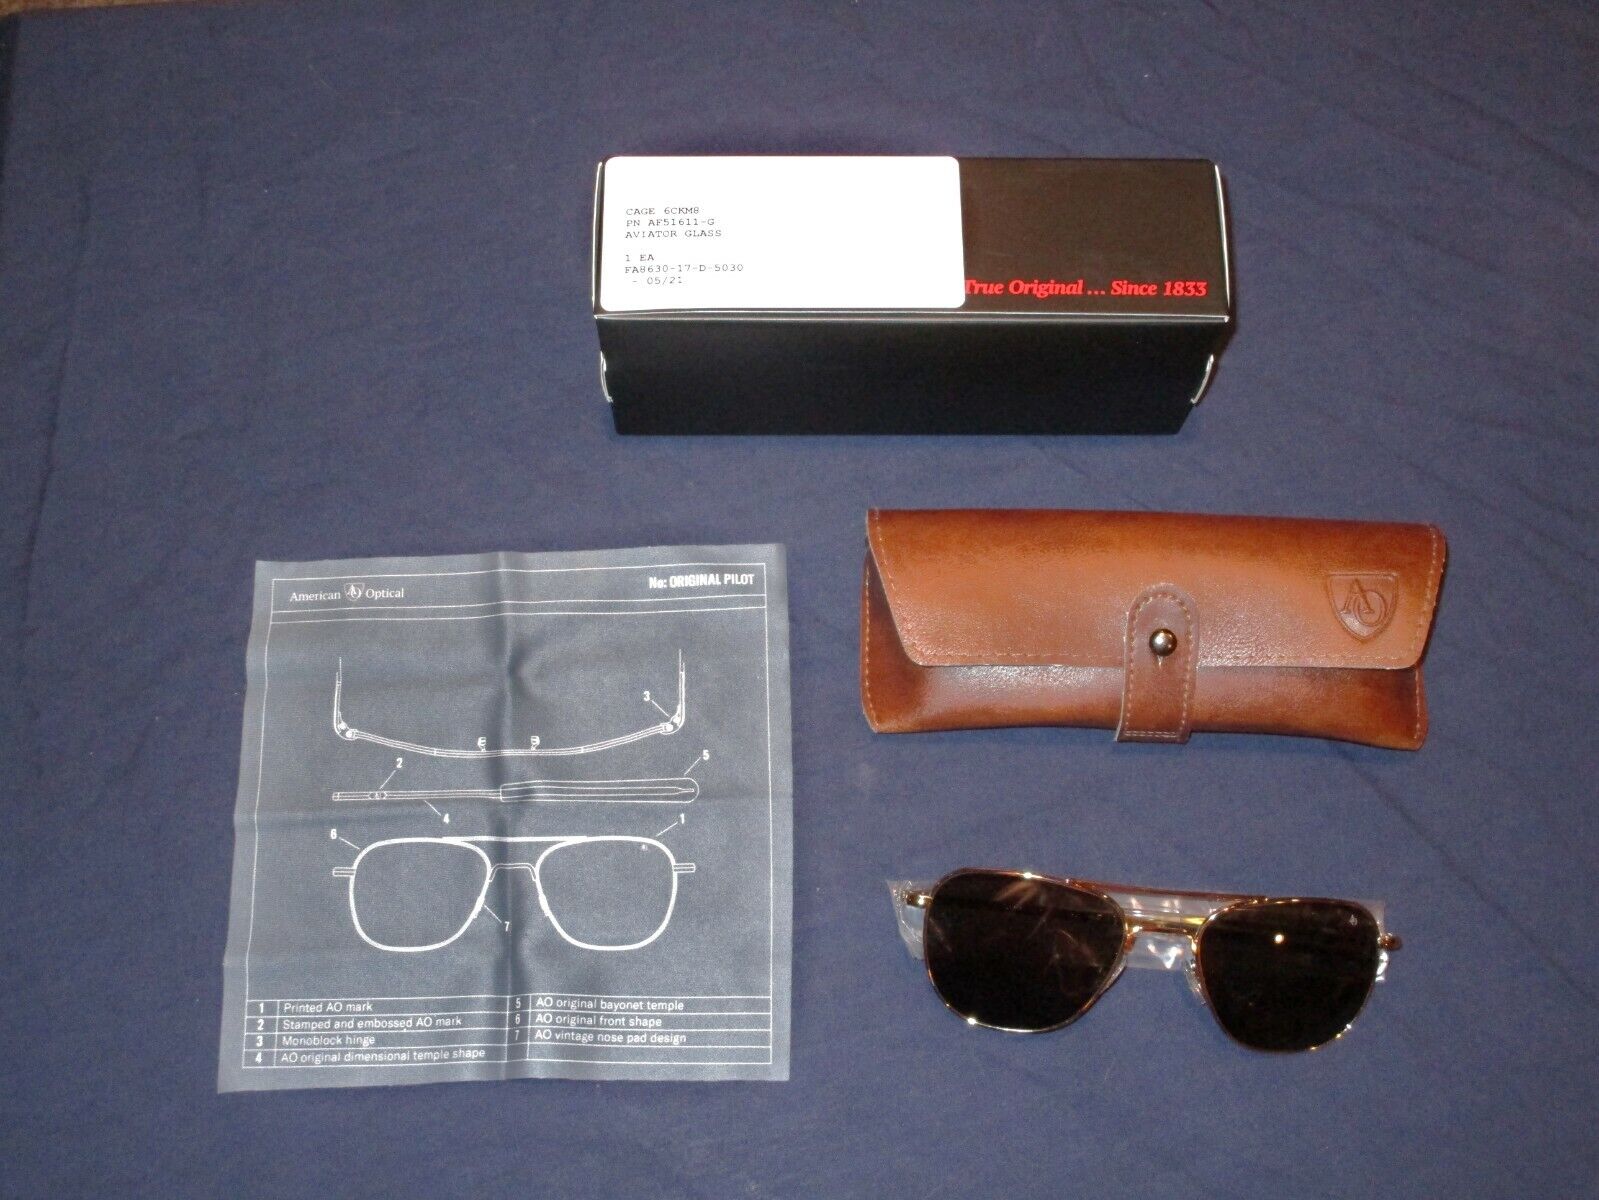 New, American Optical, AO, Original Pilot Sunglasses, 55 mm Lens, Gold Frames